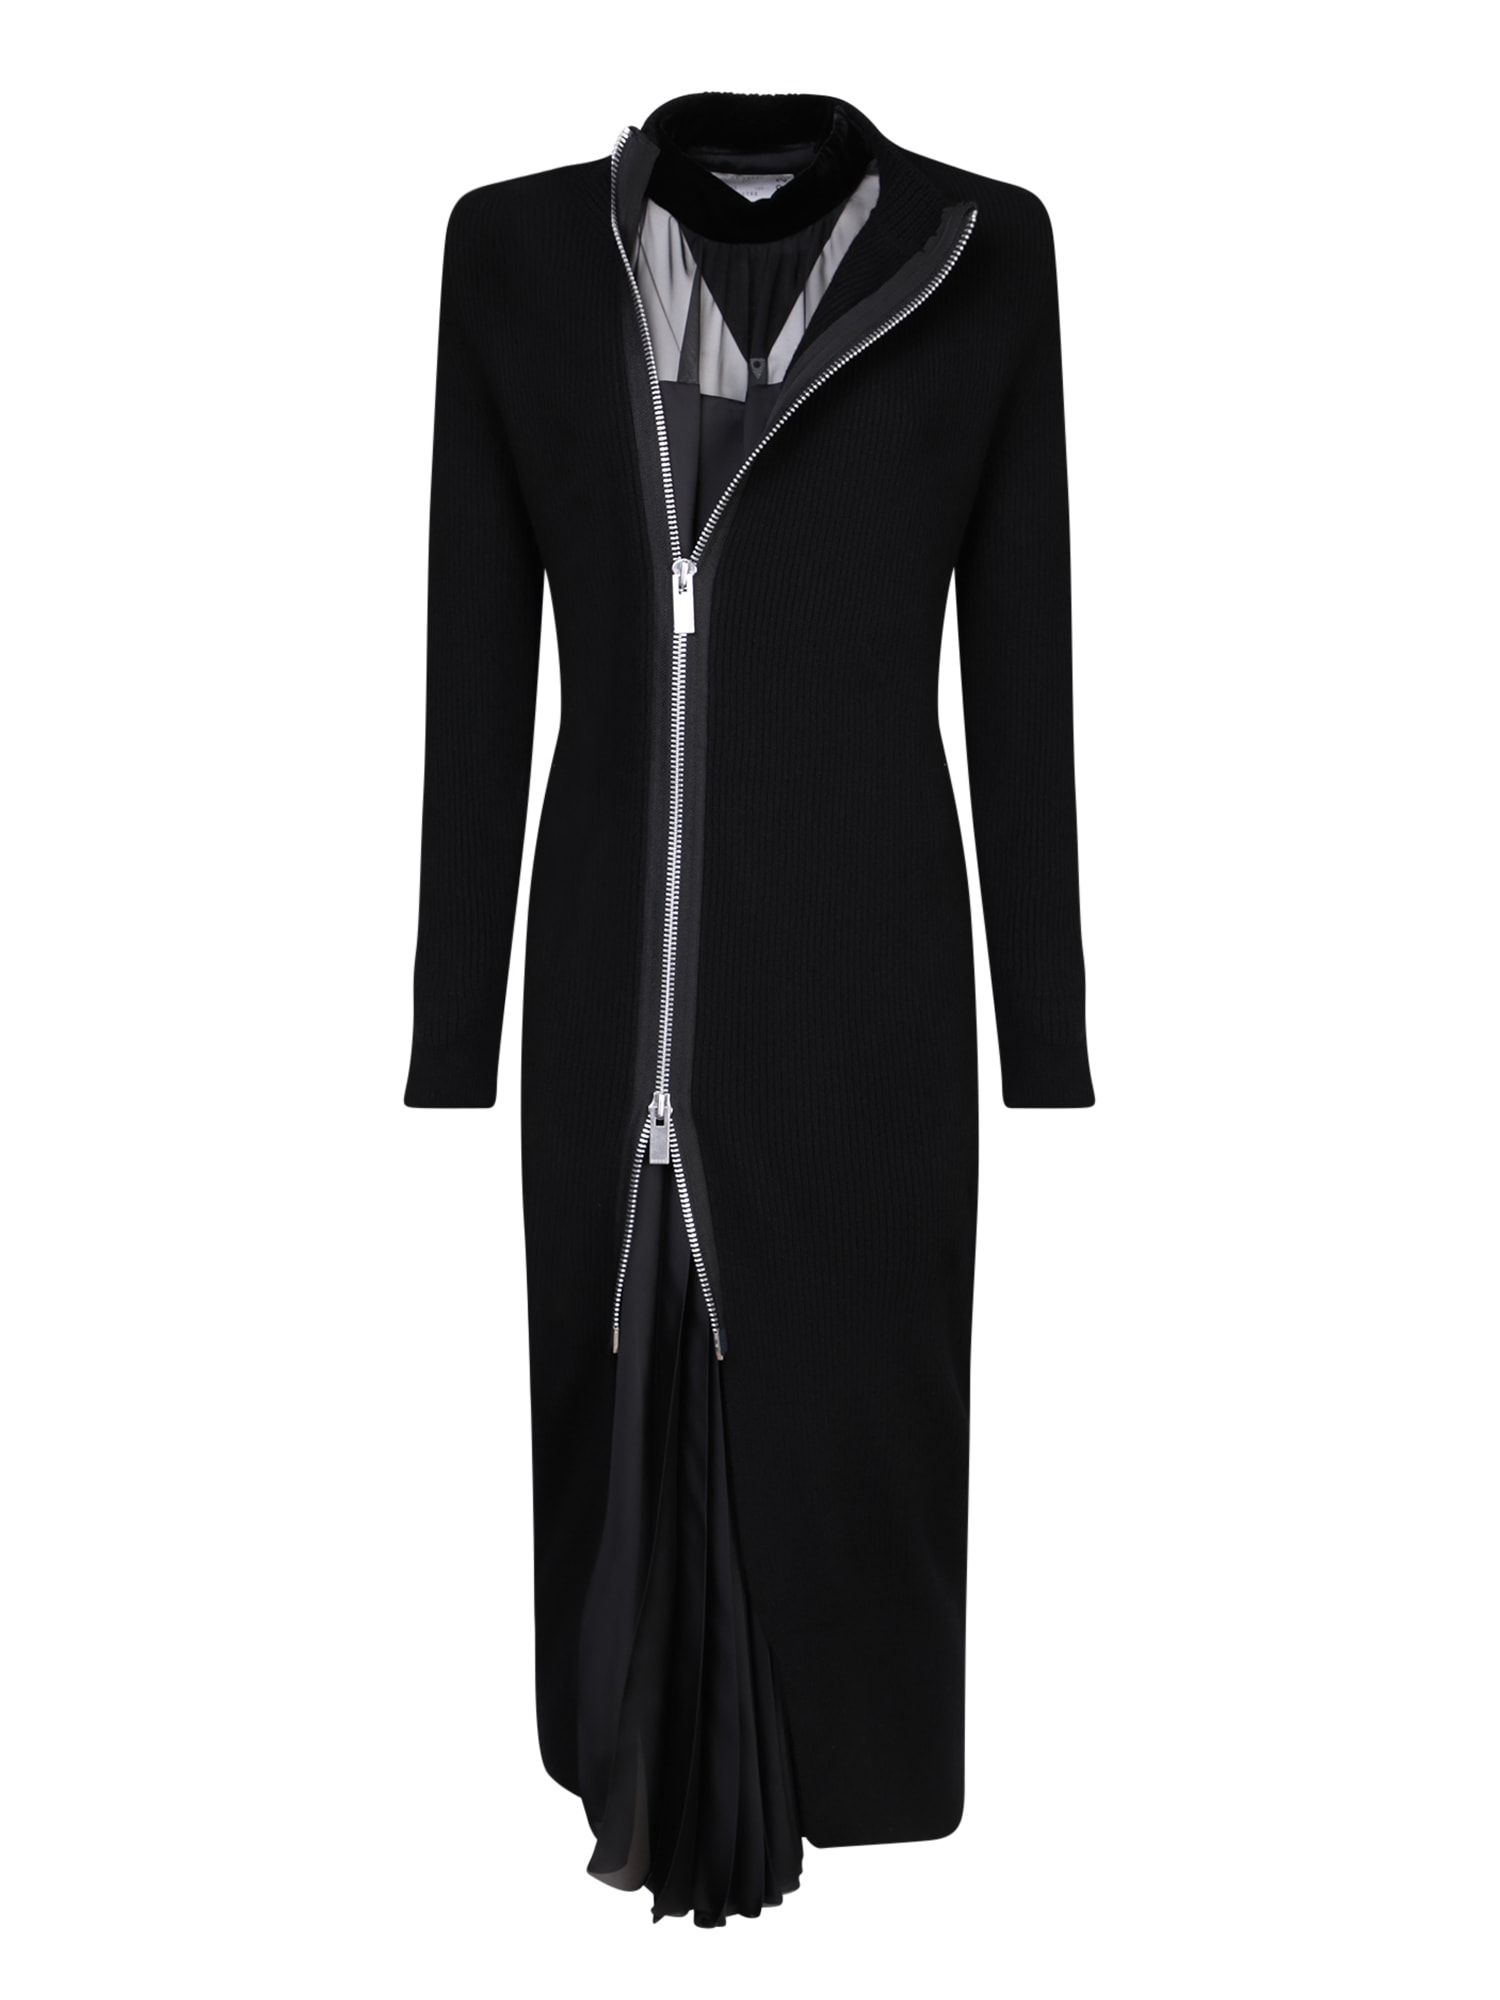 Shop Sacai Cardigan Black Dress